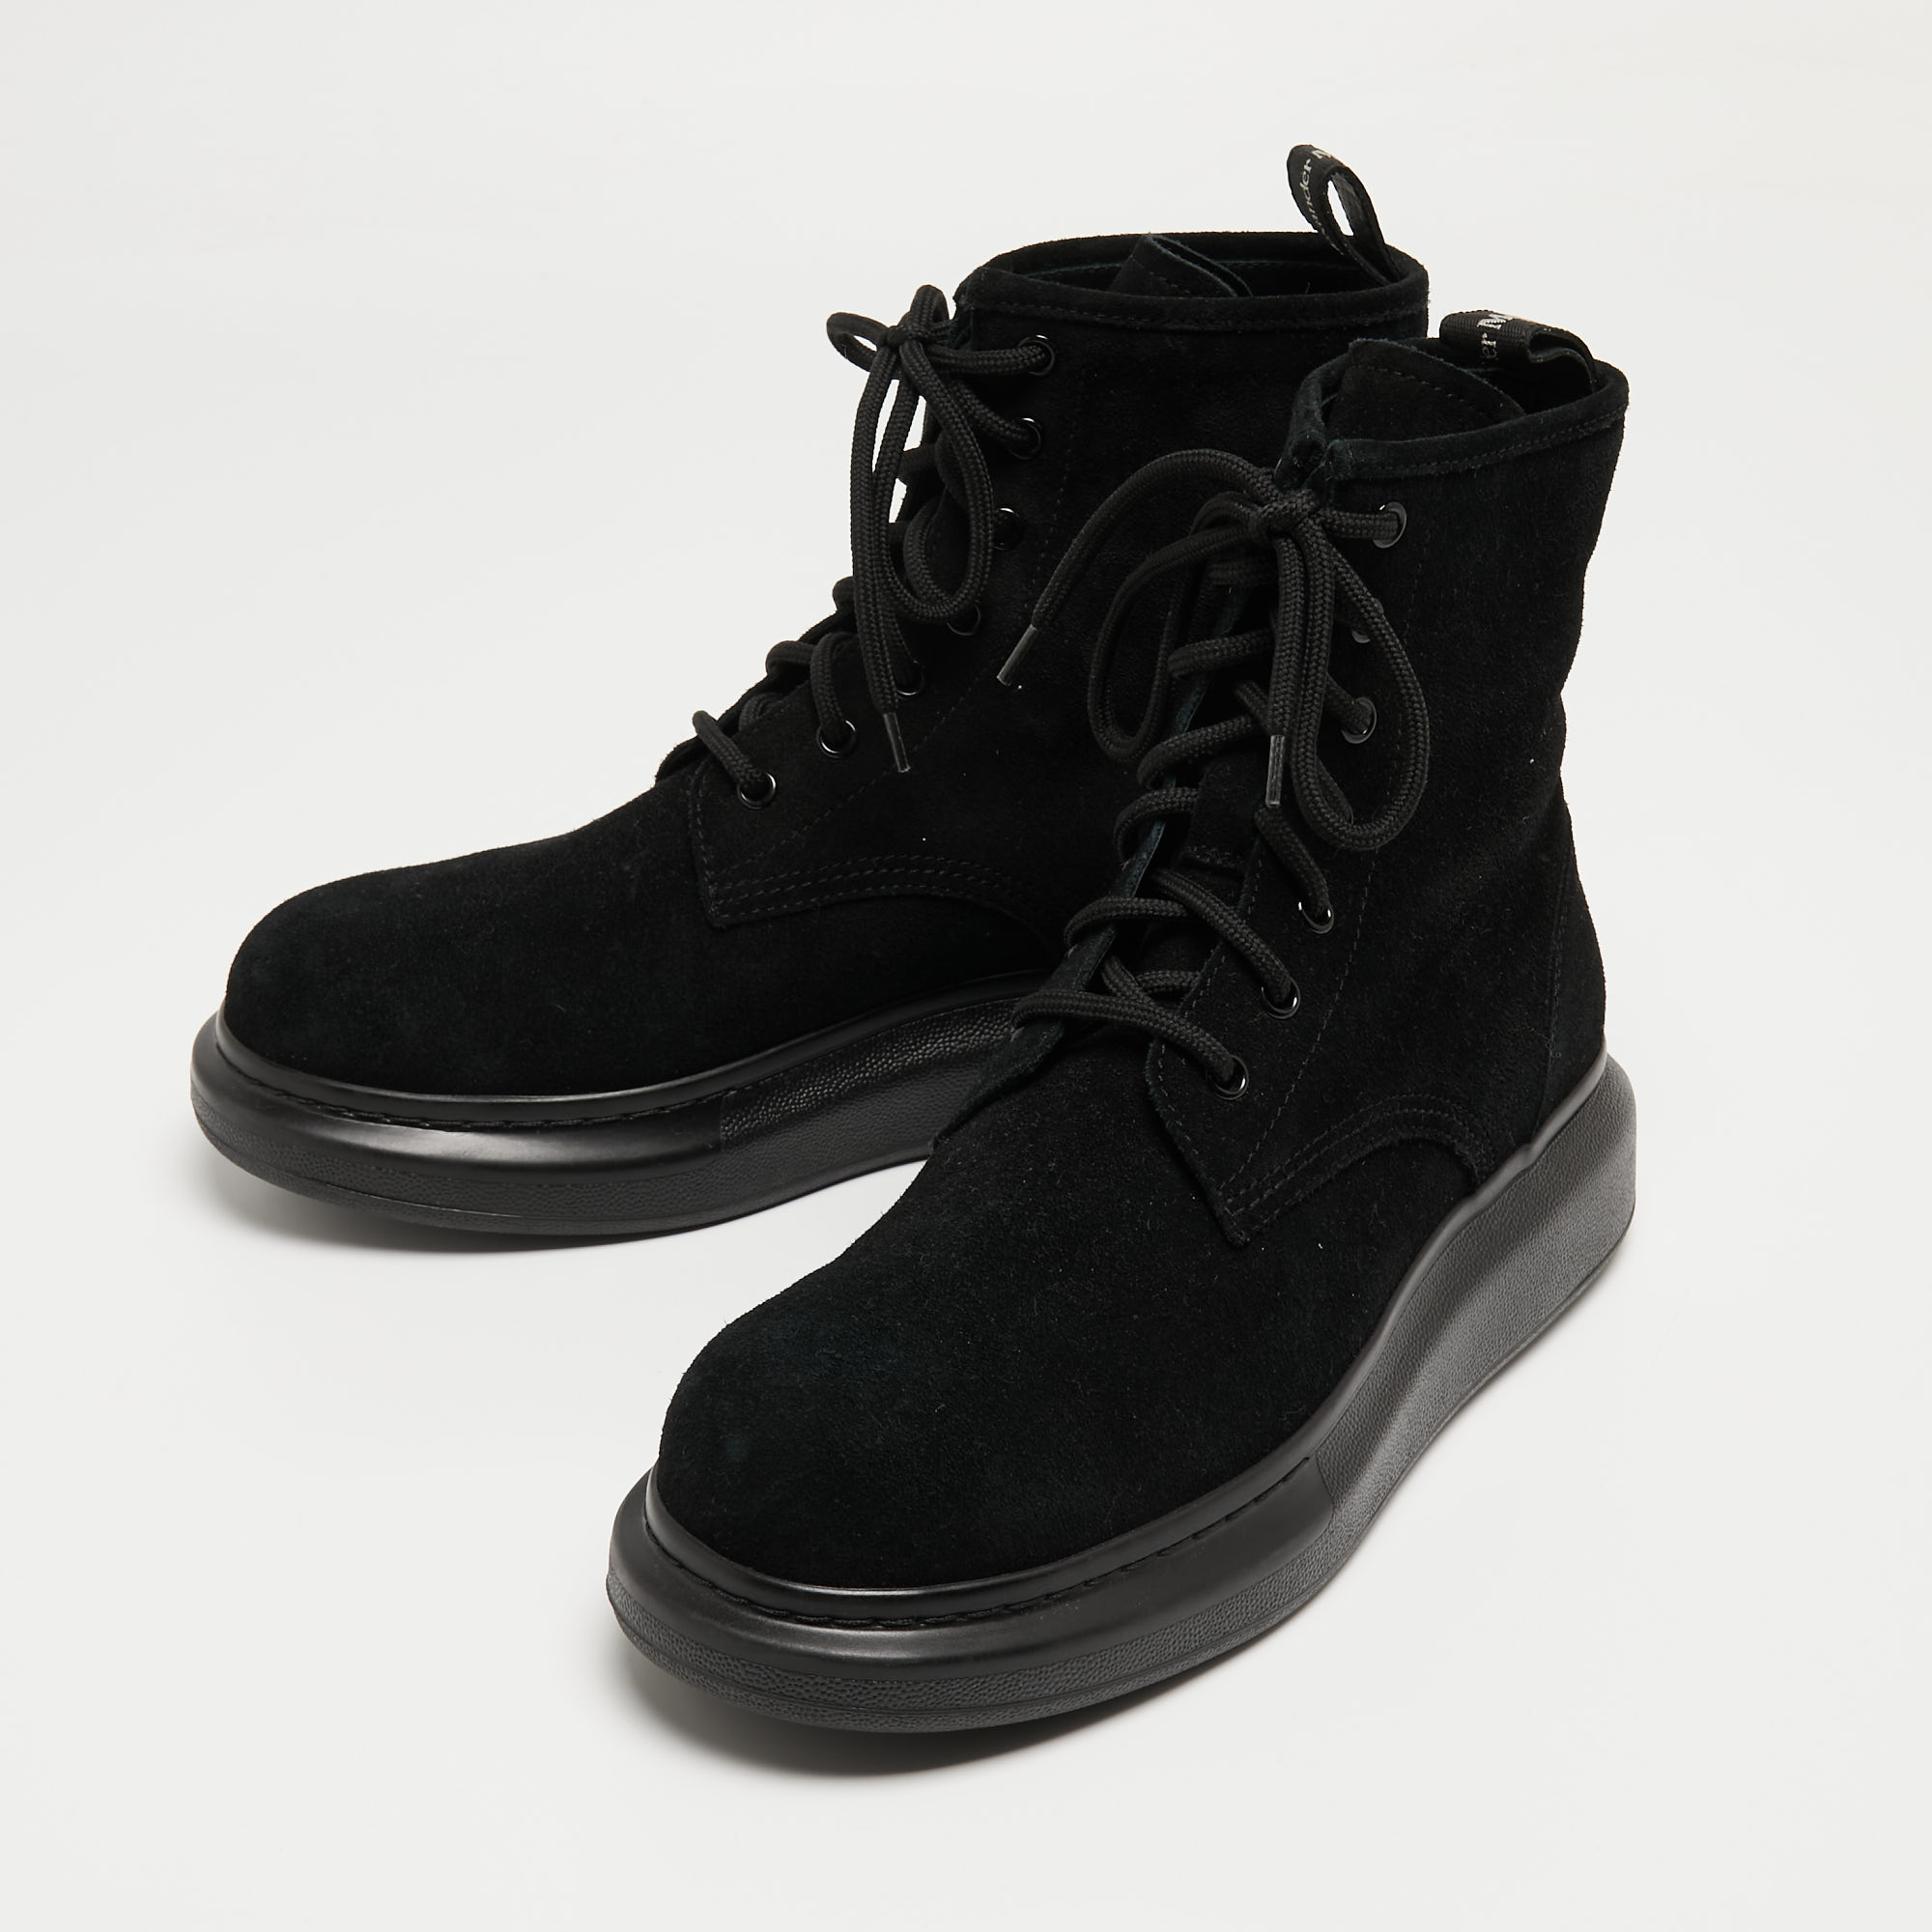 

Alexander McQueen Black Suede High Top Sneakers Size